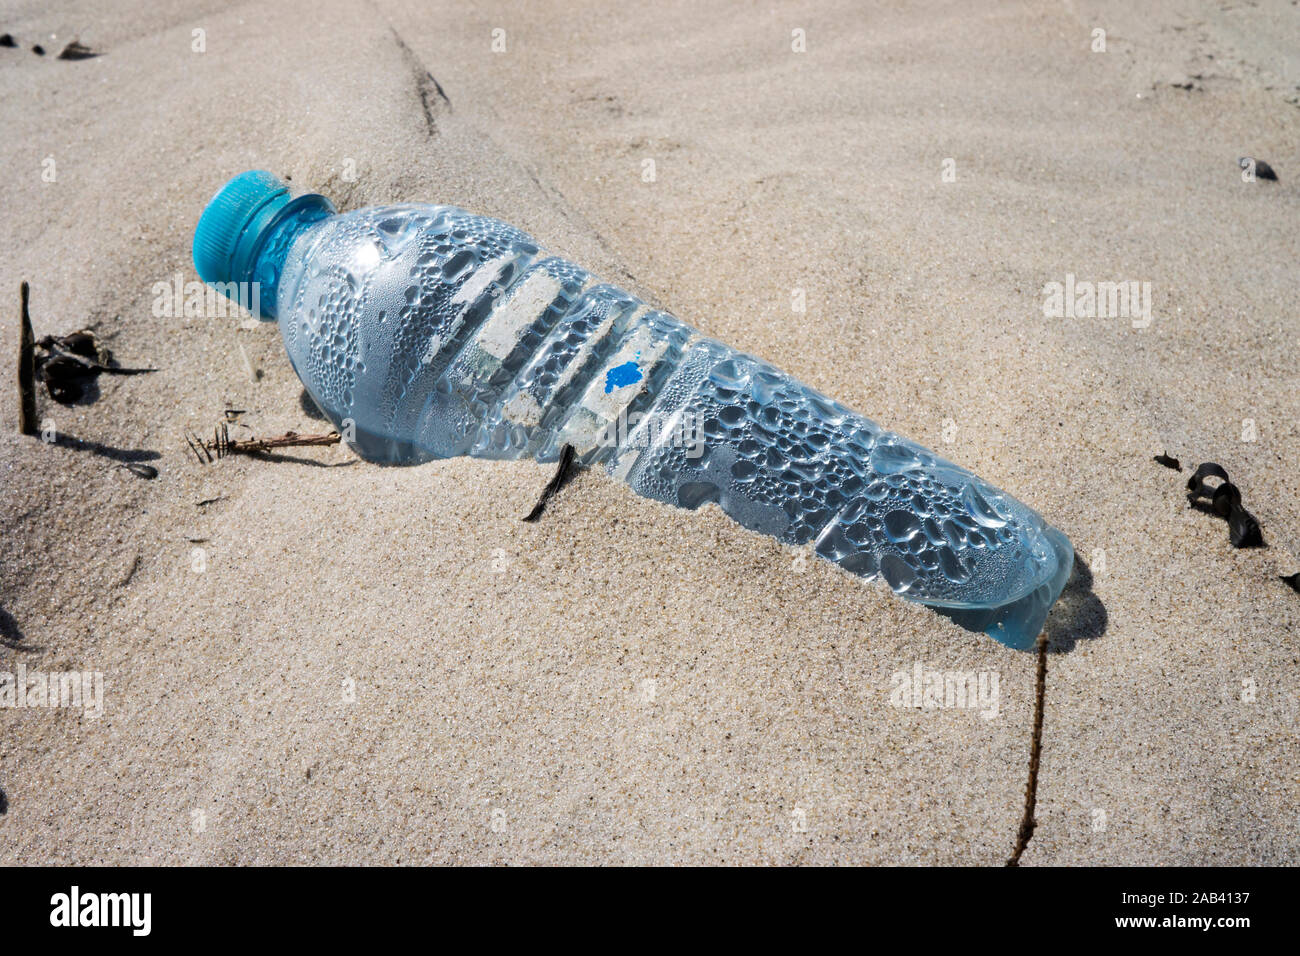 Eine angespülte Mineralwasserflasche aus Kunststoff auf einer Sandbank im Watt |An alluvial mineral water  bottle of plastic on a sand bank in the Wad Stock Photo